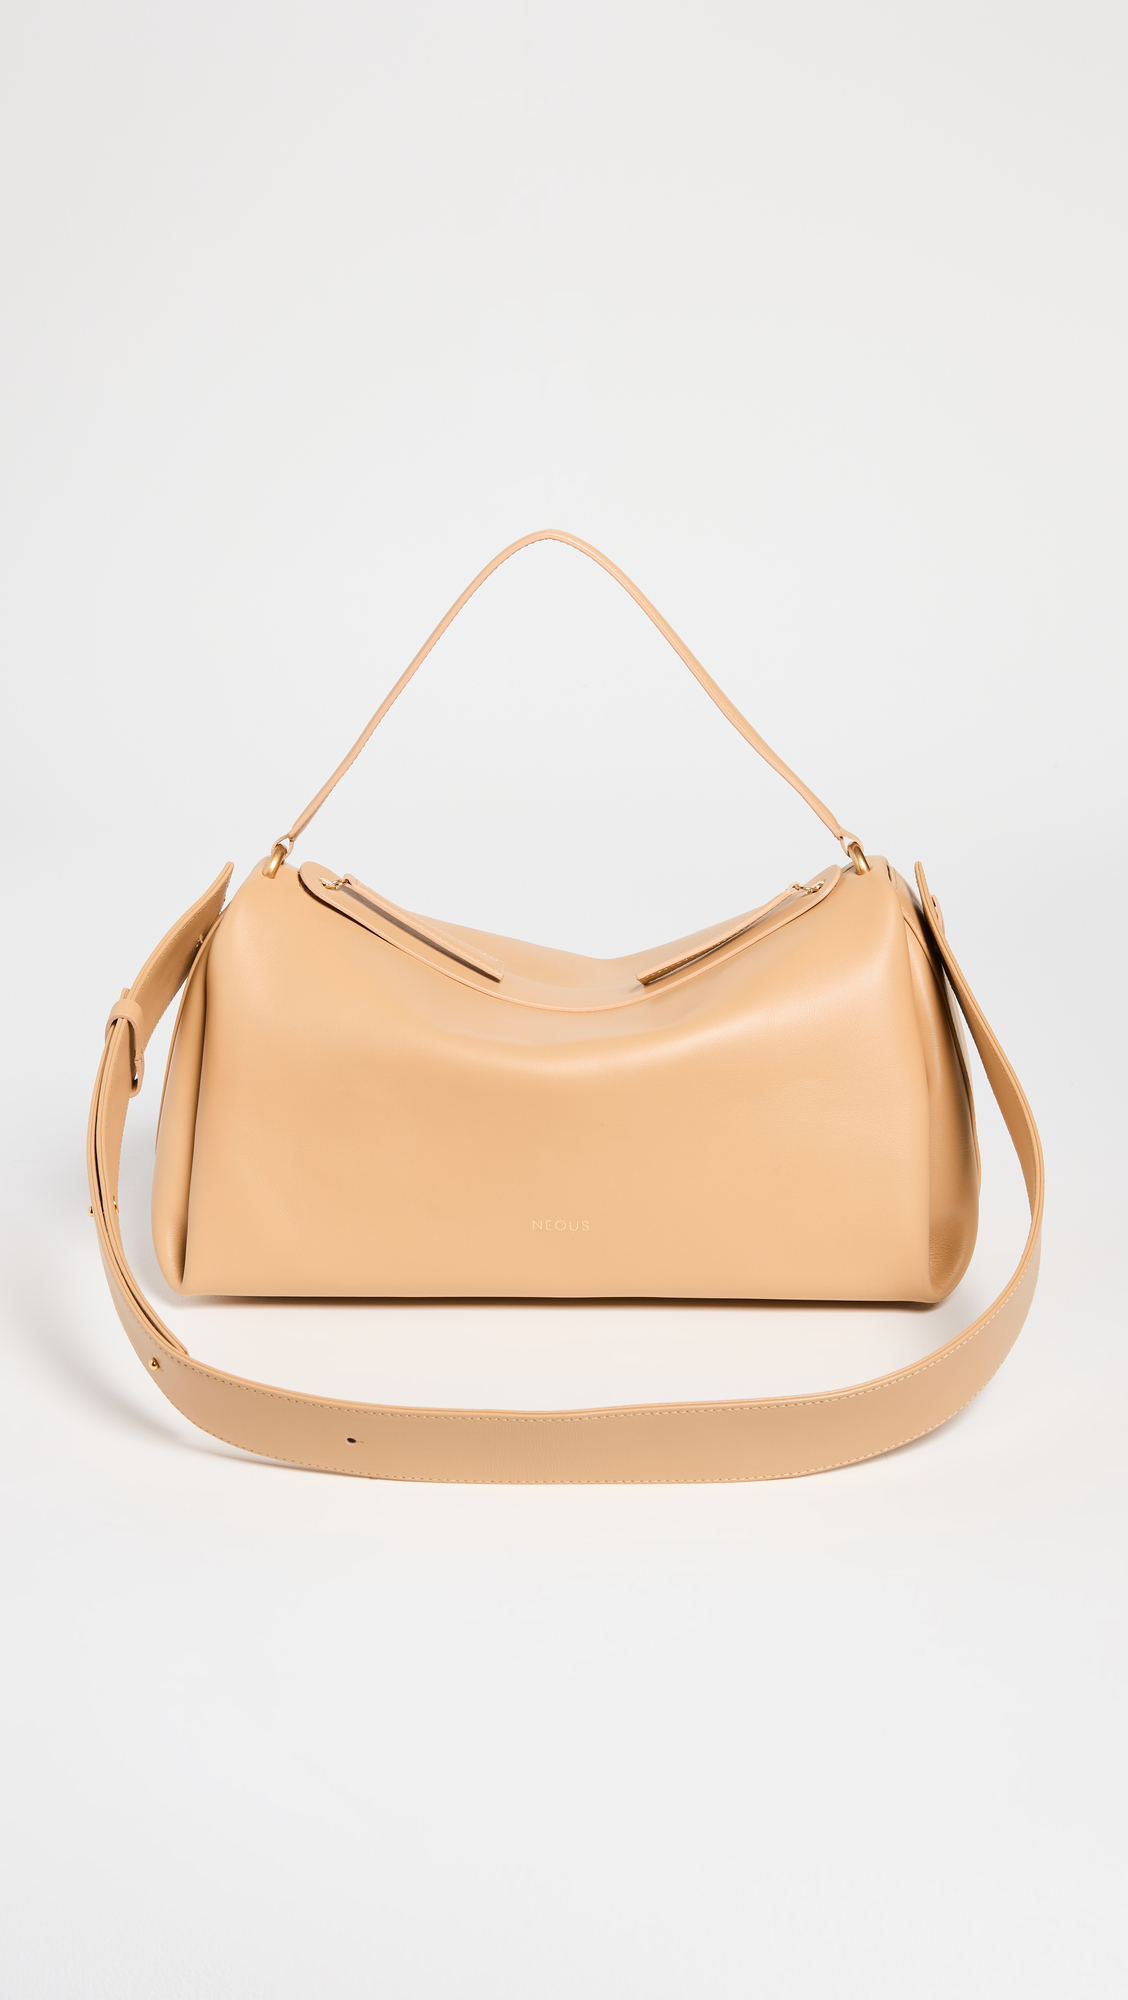 shopbop designer bags on sale 307448 1684962531608